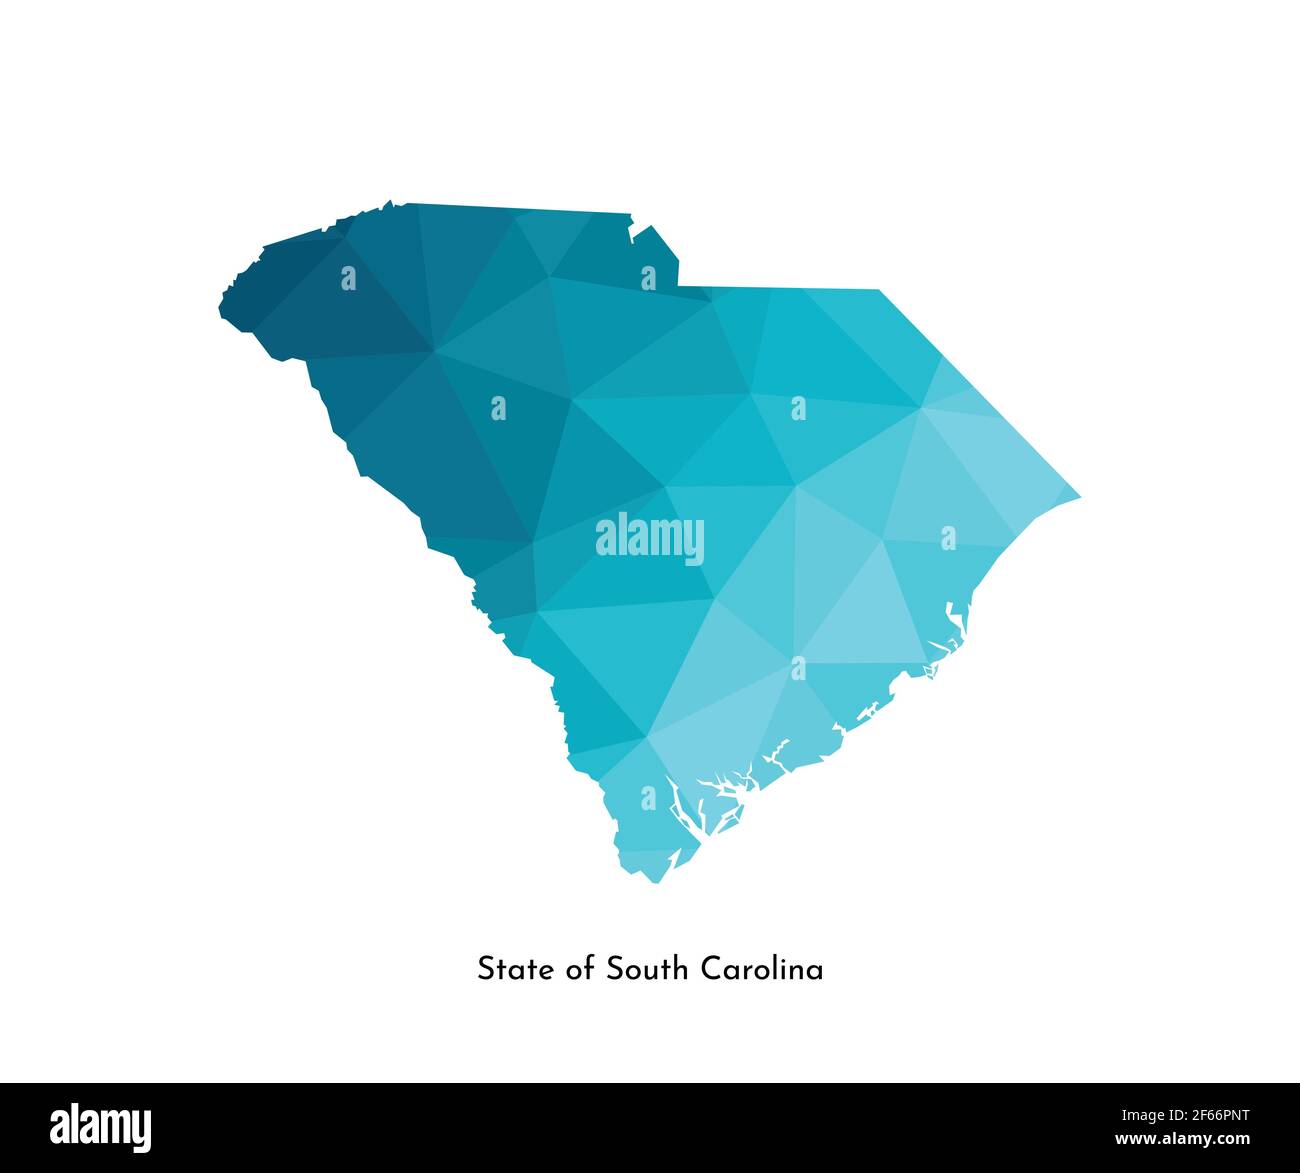 Vektor isolierte Illustration Symbol mit vereinfachten blauen Karte Silhouette von State of South Carolina (USA). Polygonaler geometrischer Stil. Weißer Hintergrund. Stock Vektor